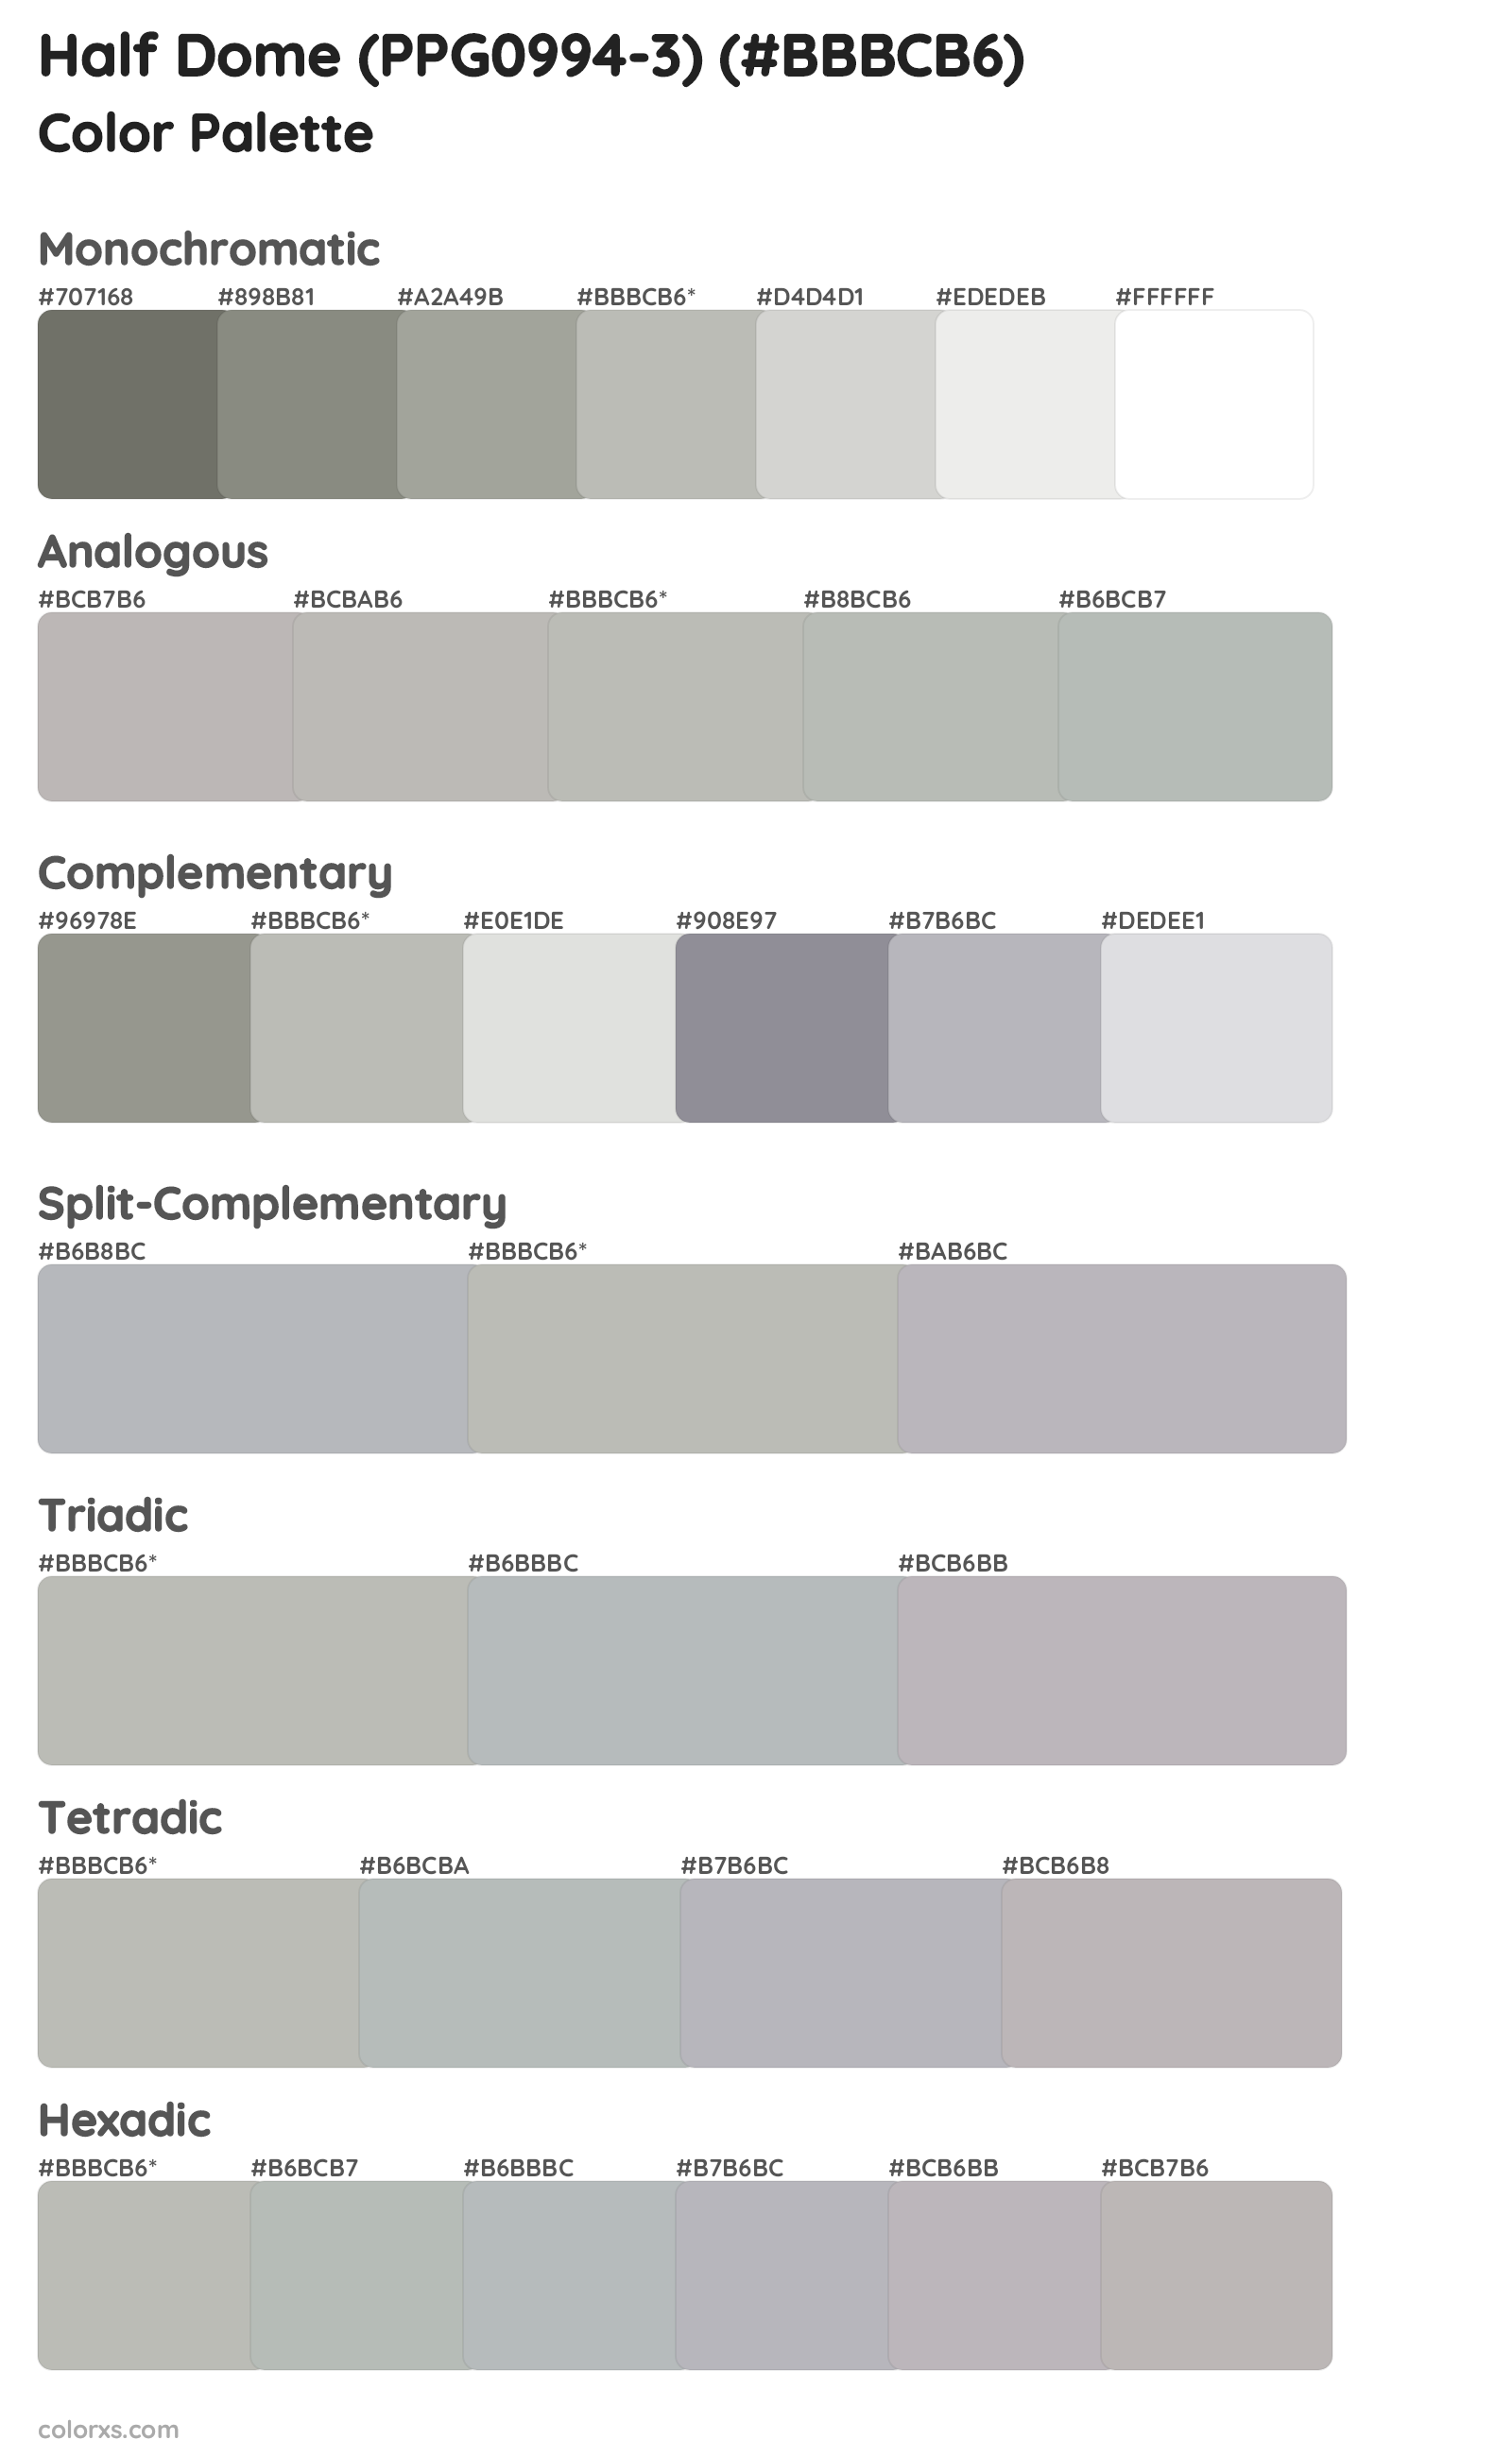 Half Dome (PPG0994-3) Color Scheme Palettes